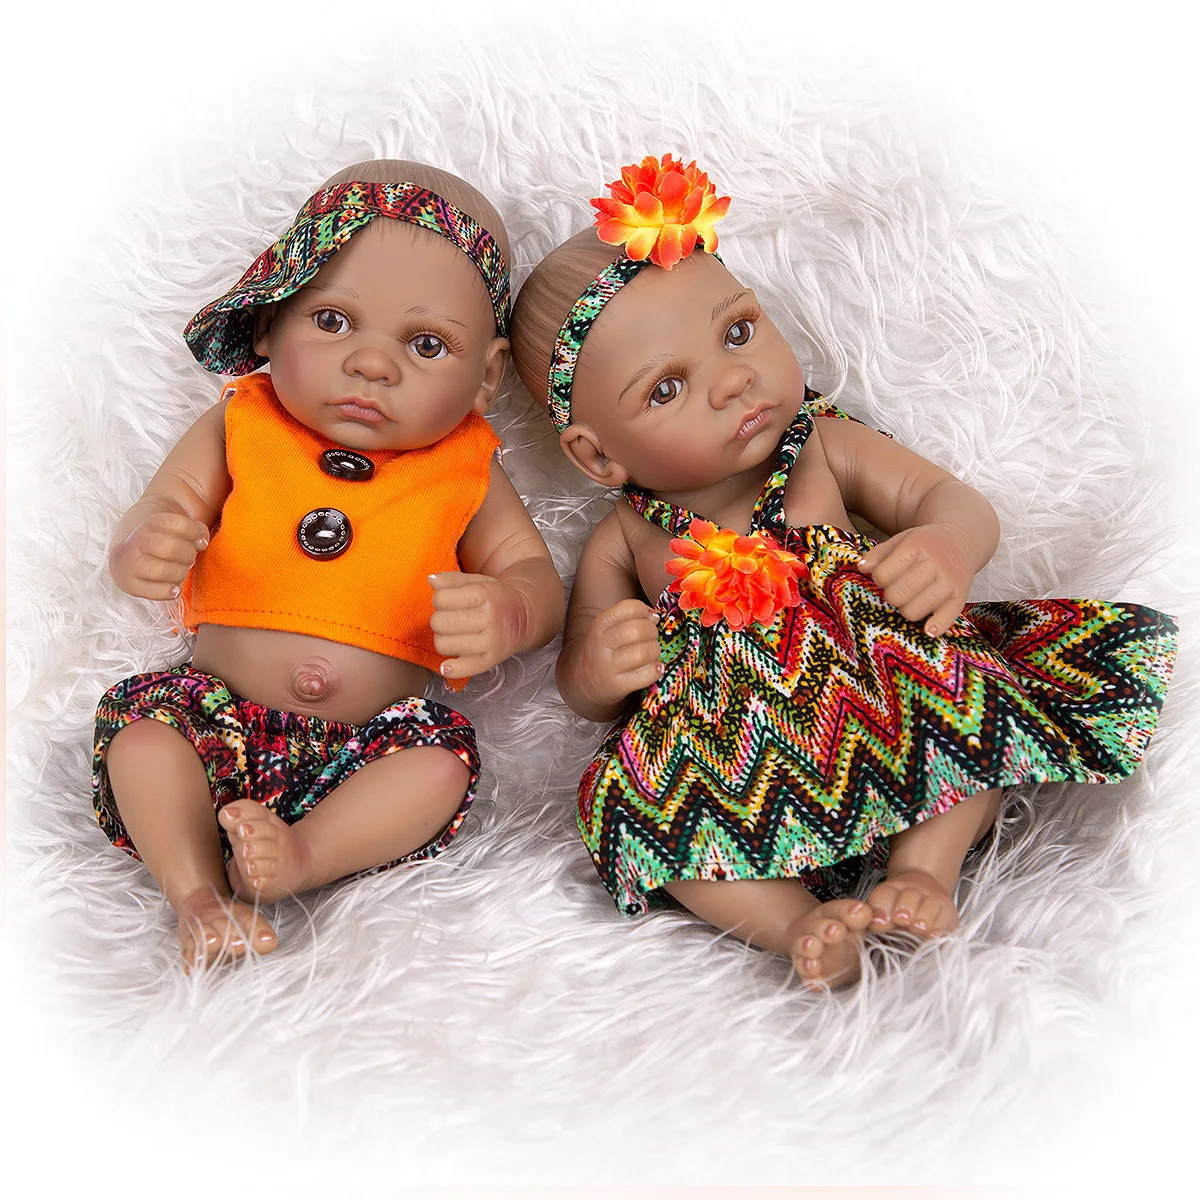 

11 Inch Full Silicone Rebirth Doll Skin-Friendly Fashion Doll Children Birthday Gift Toy Doll